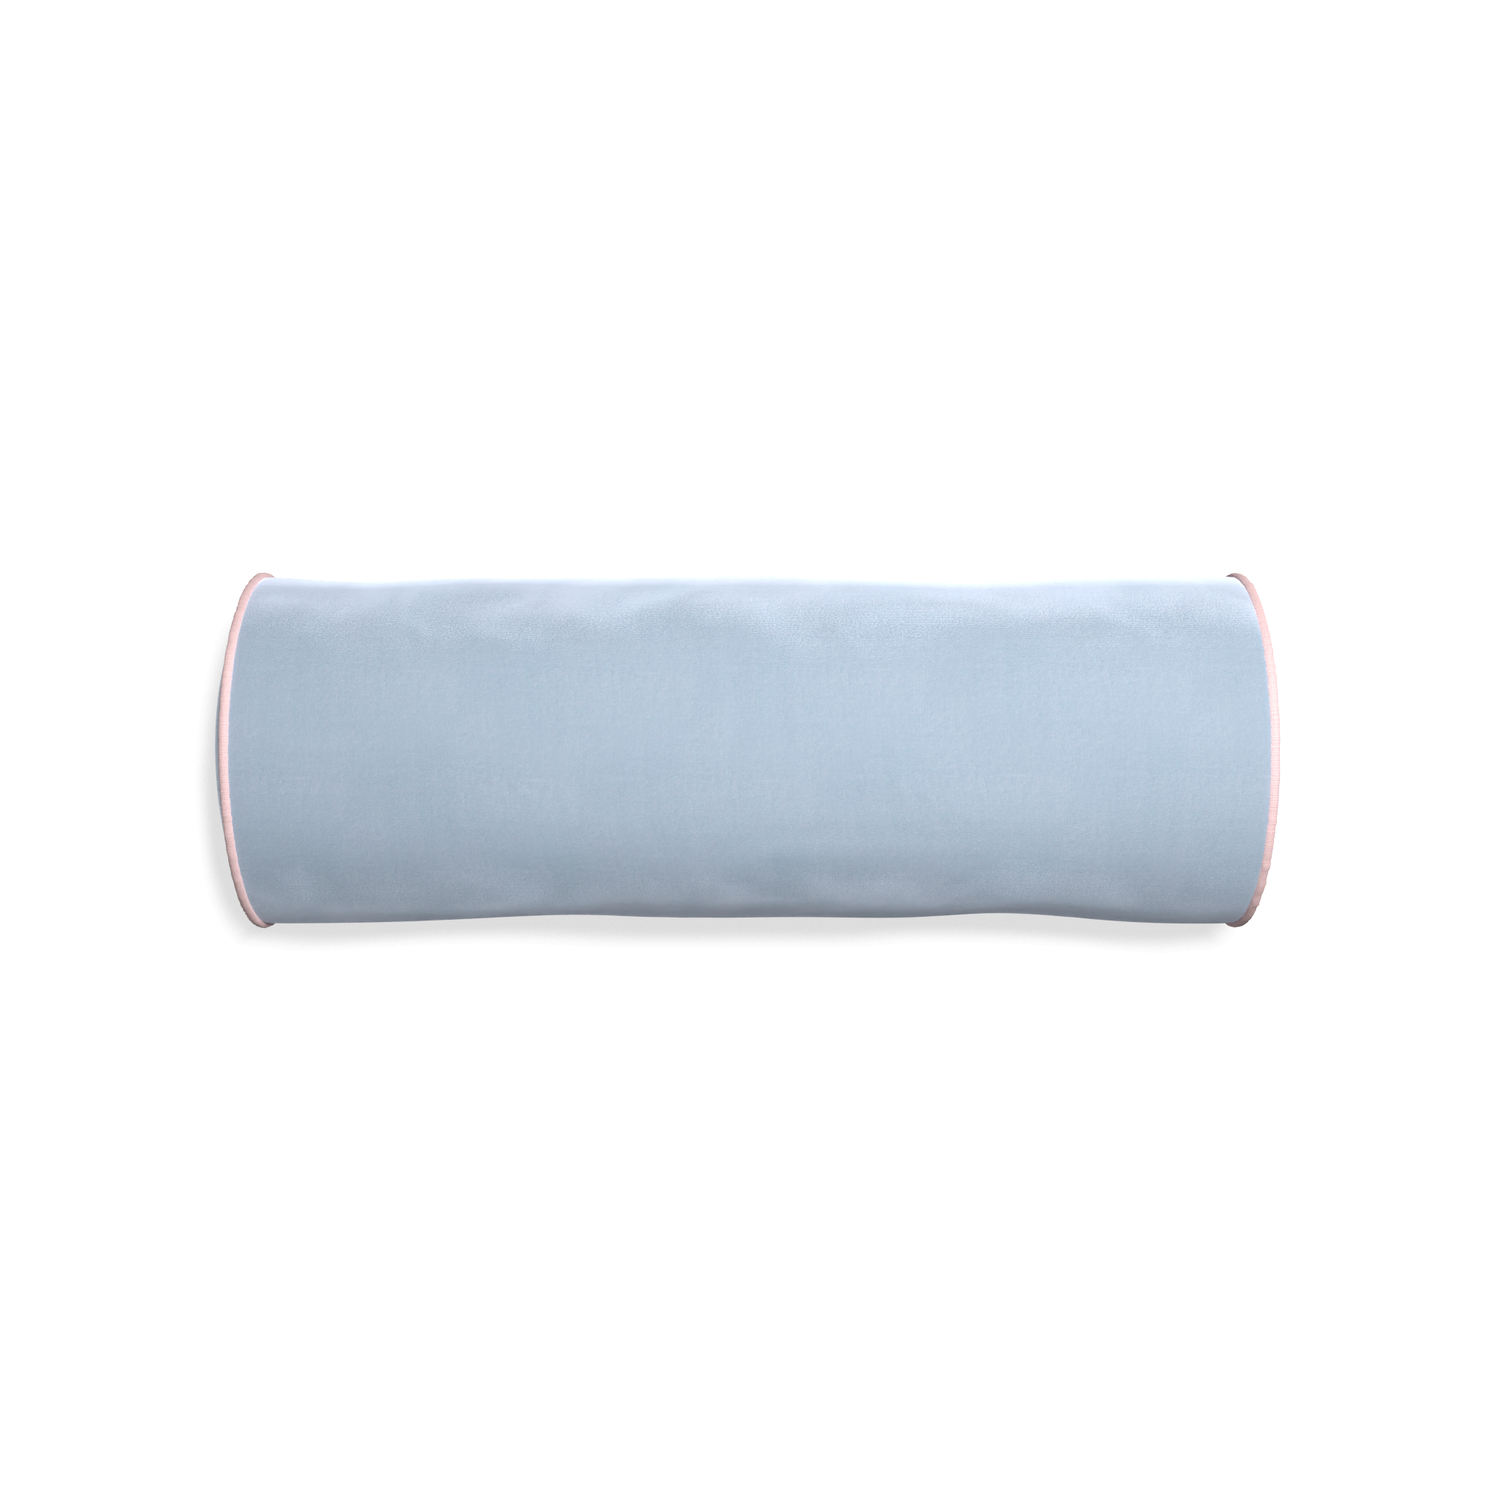 bolster light blue velvet pillow with light pink piping 